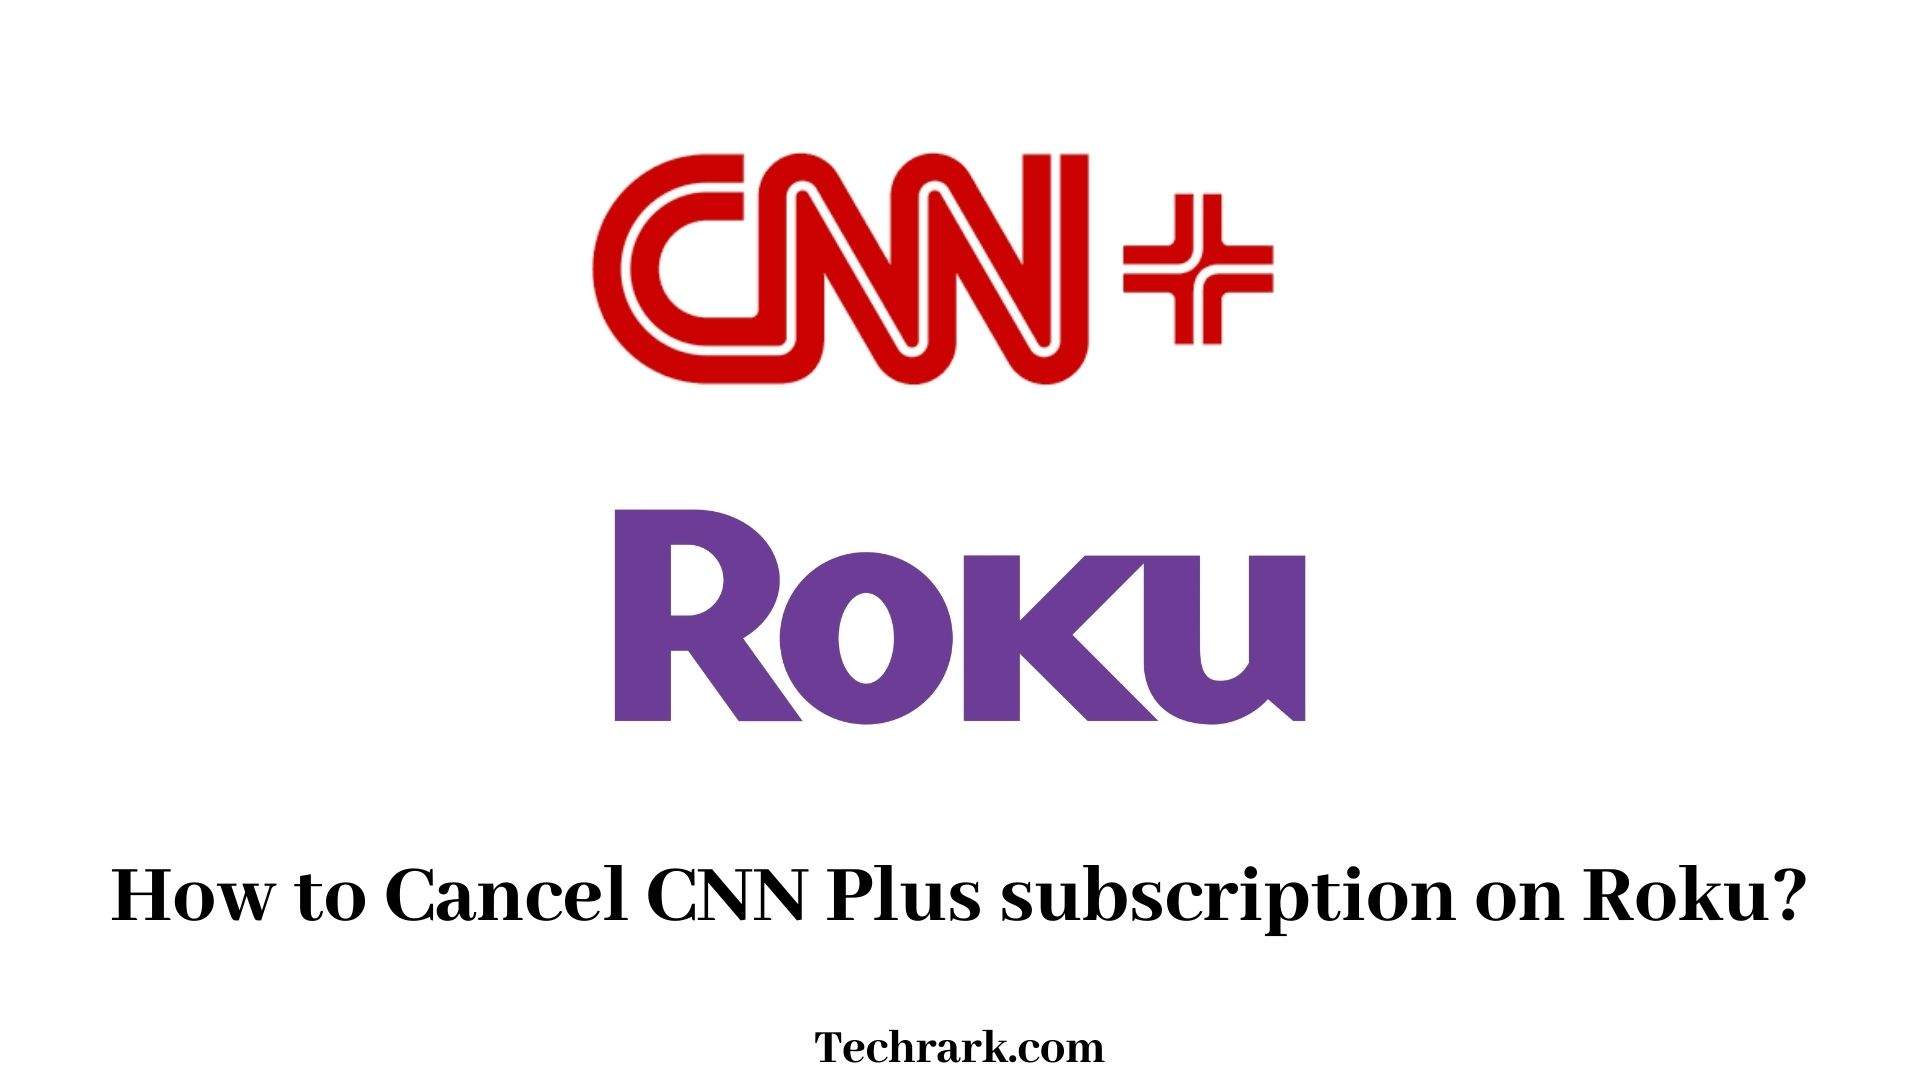 Cancel CNN Plus on Roku